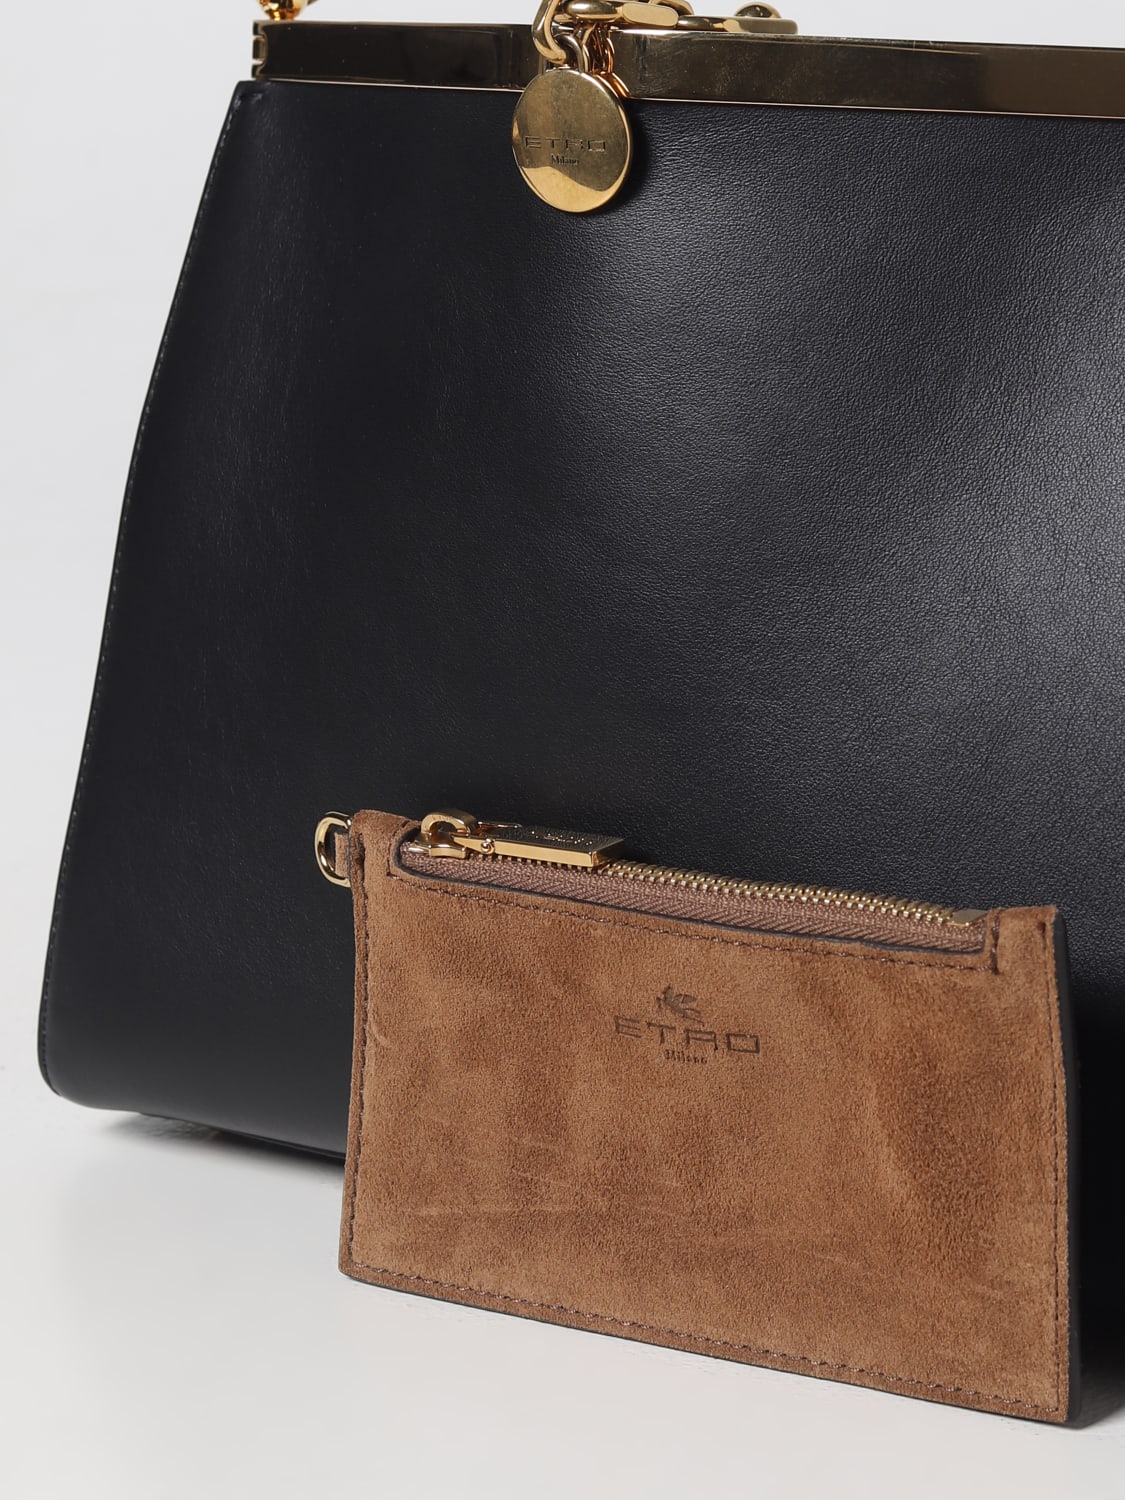 Etro Small Vela Leather Shoulder Bag in Black